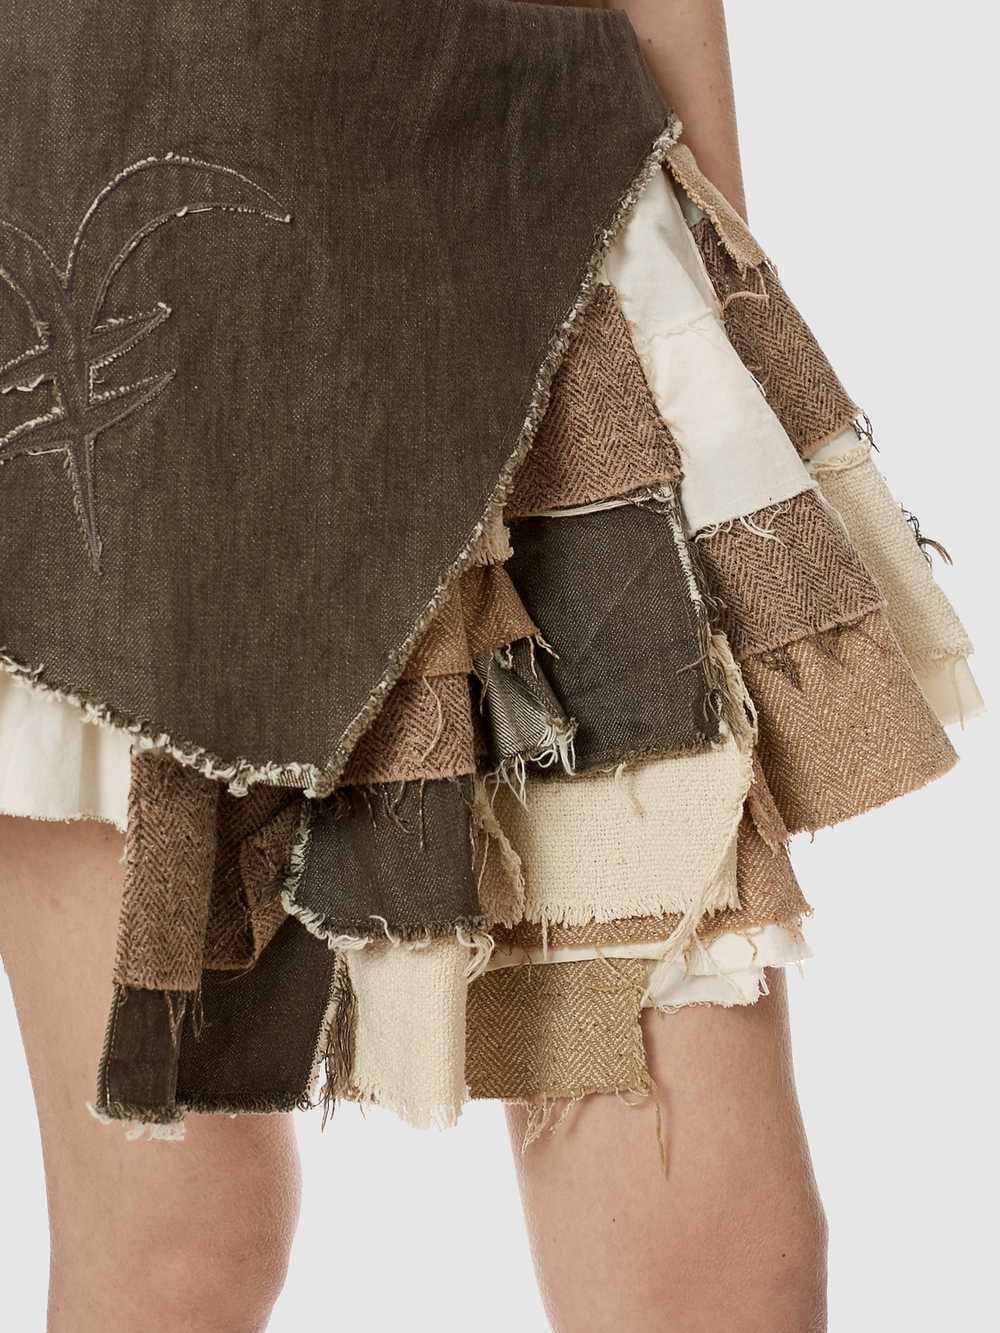 Michiko Koshino Patchwork Skirt - image 6